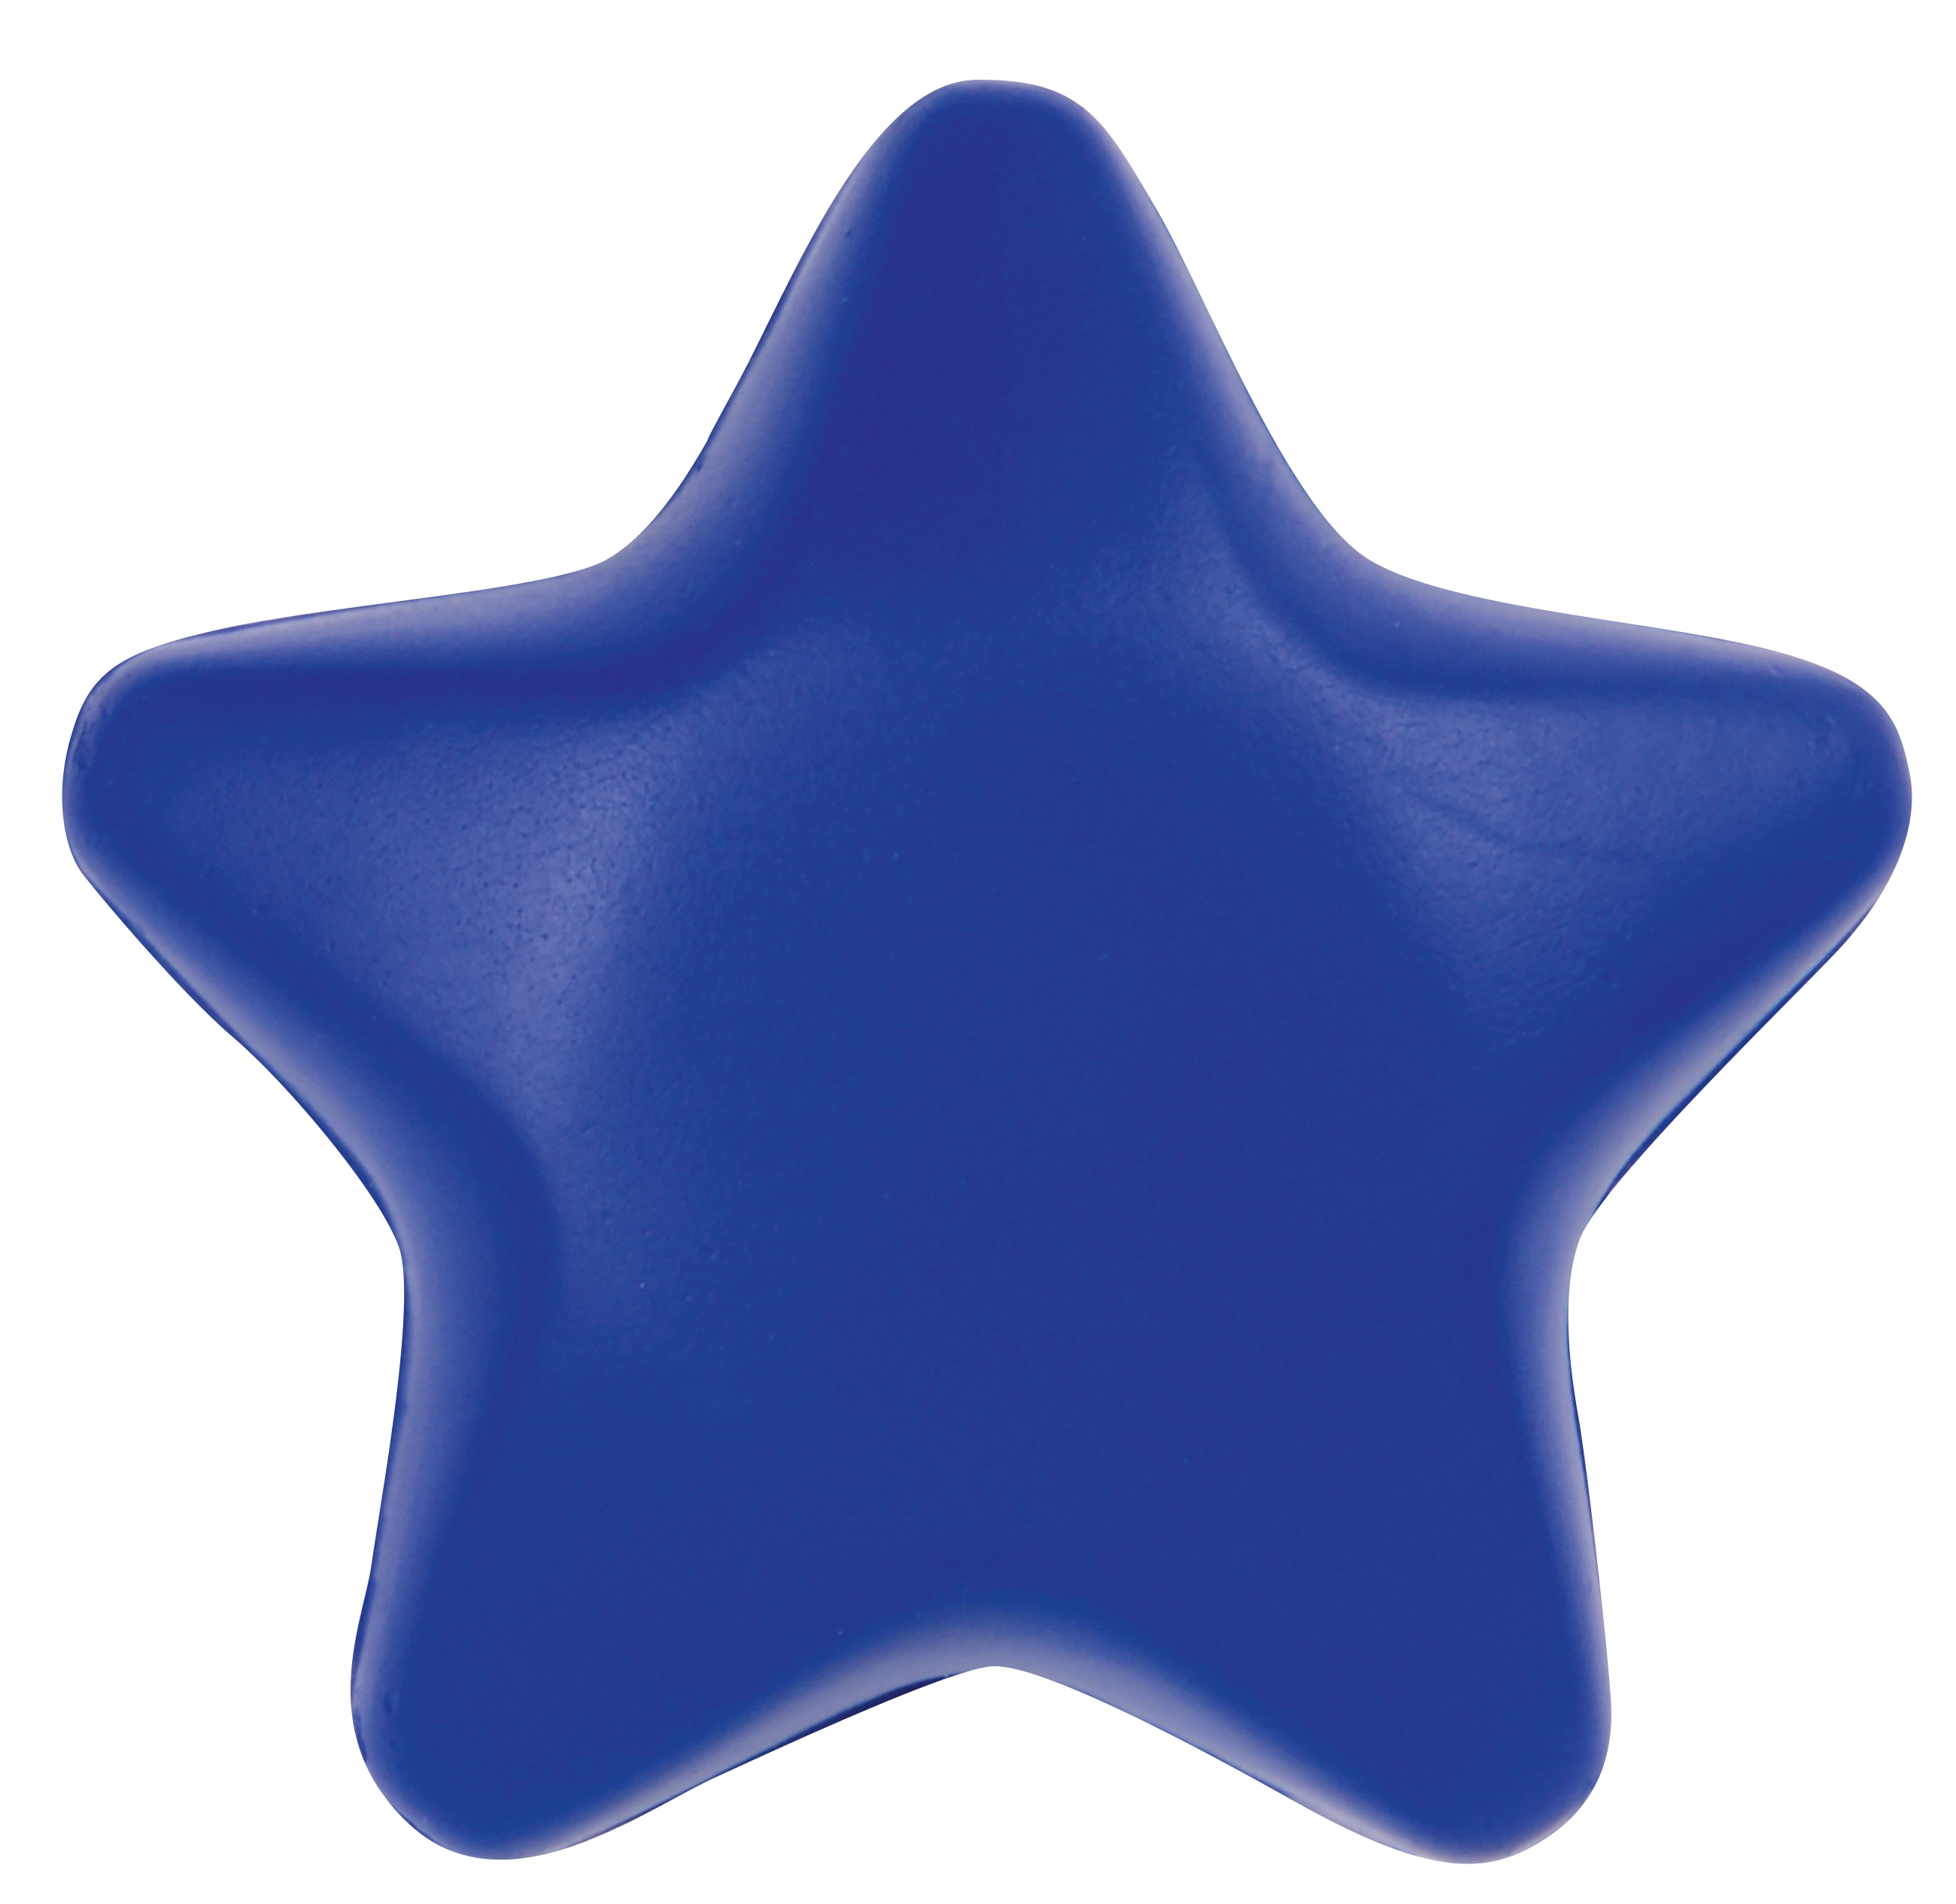 Gwiazdka antystresowa STARLET, niebieski 56-0402130 niebieski